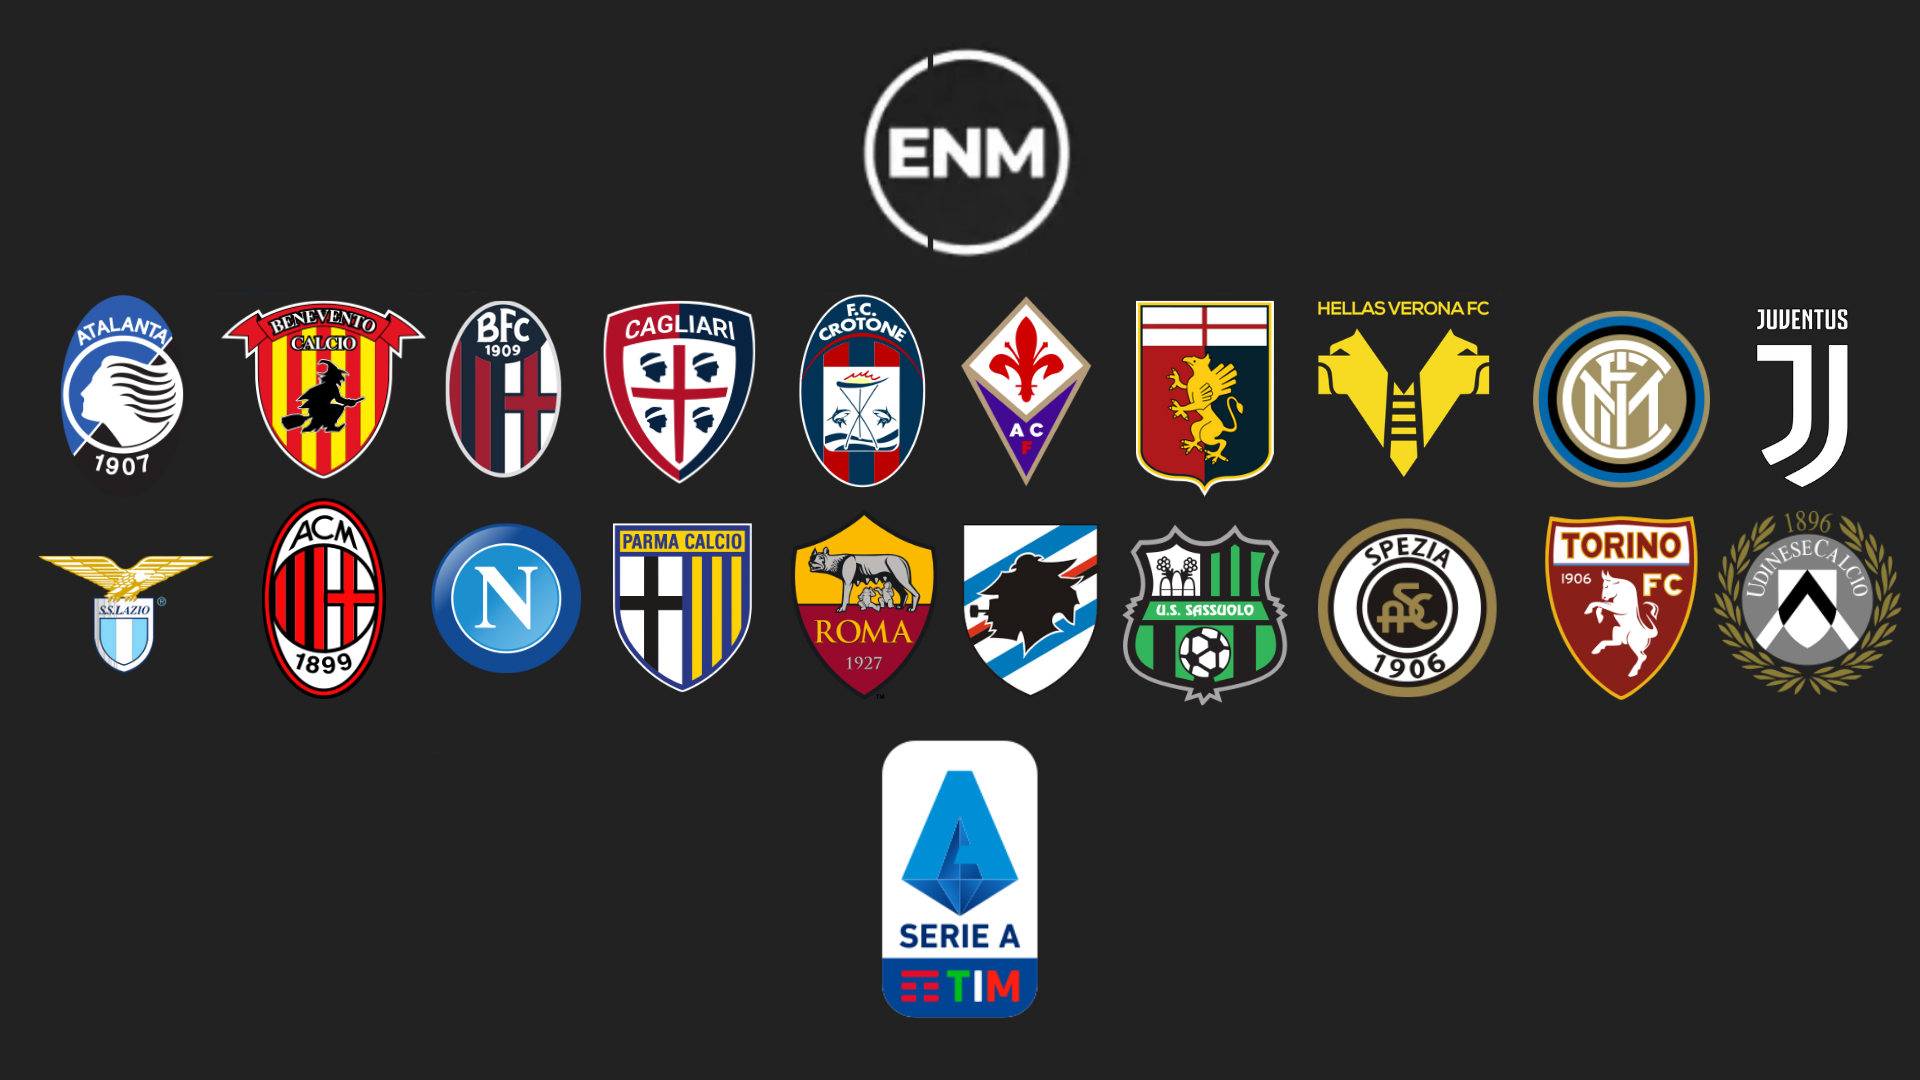 Campeonato Italiano - Série A TIM – Logo de Times